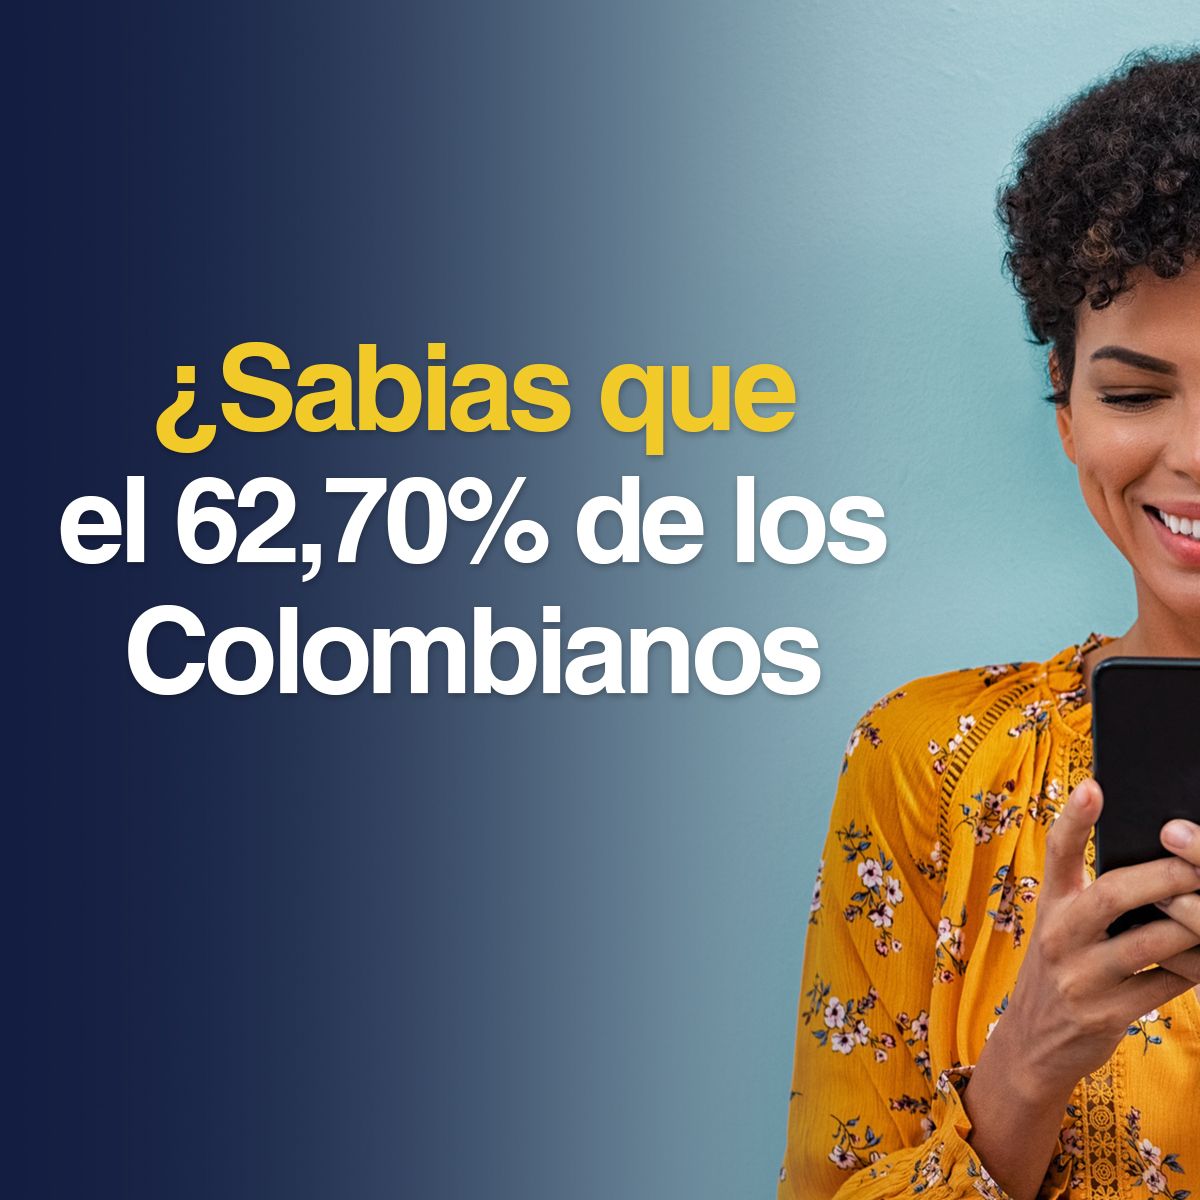 ¿Sabias que el 62,70% de los Colombianos